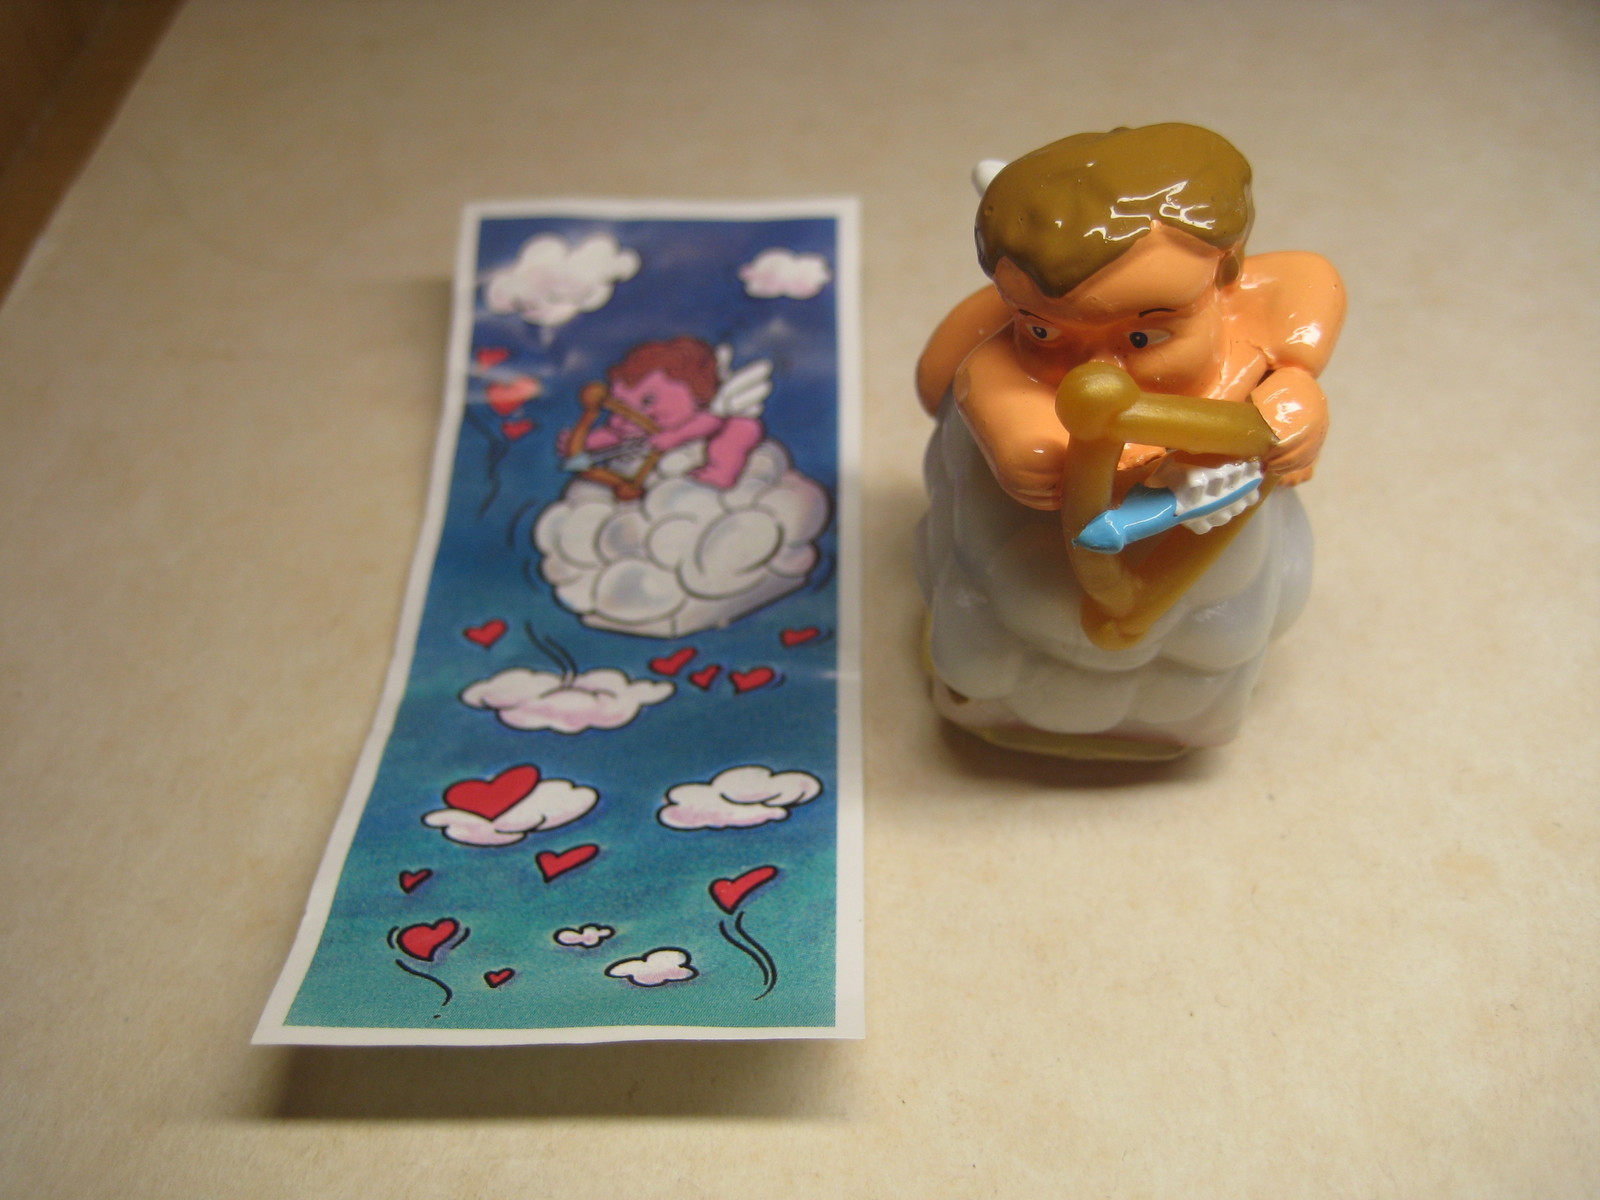 Kinder - K00 119 Cupido - Rubber stamp + paper - Surprise egg - $1.50